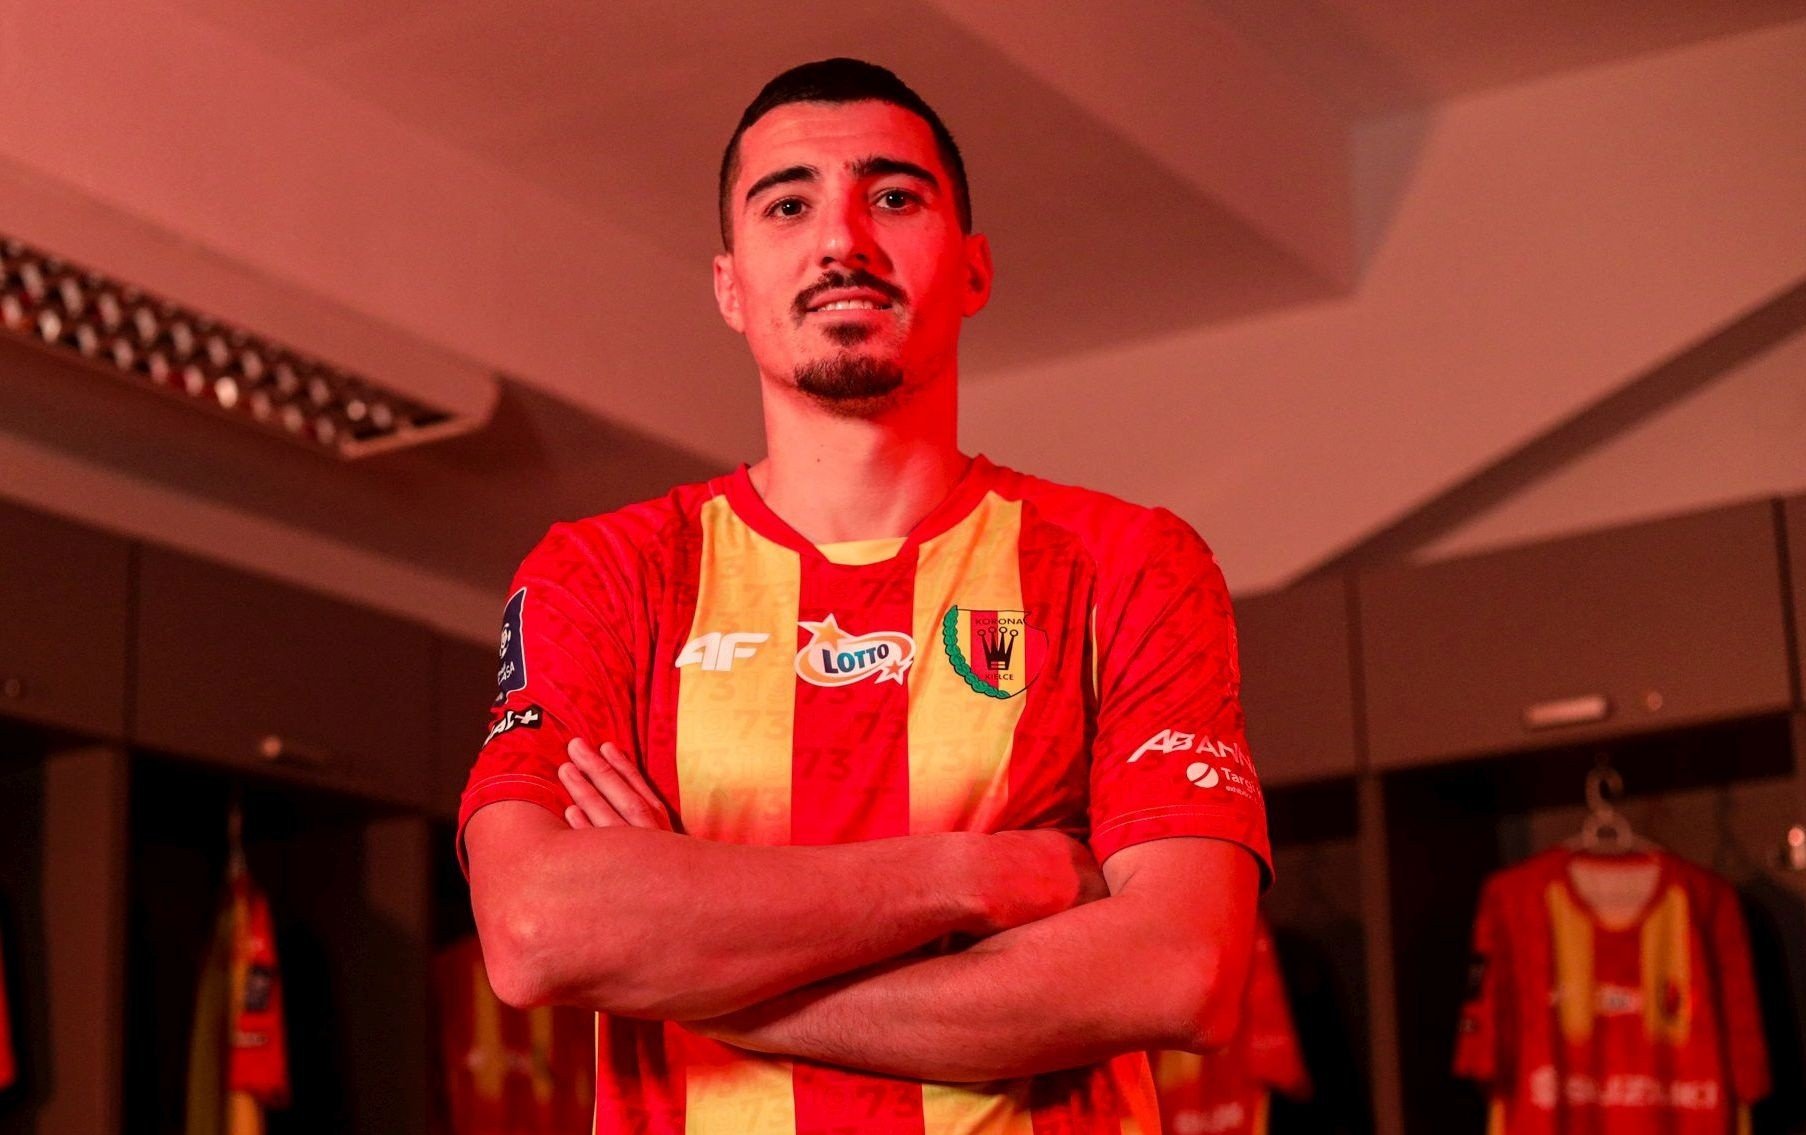 Fundașul român Marius Presig a devenit jucător în rândurile lui Corona.  Acesta este al cincilea transfer.  El va putea juca în meciul cu Legia Warszawa